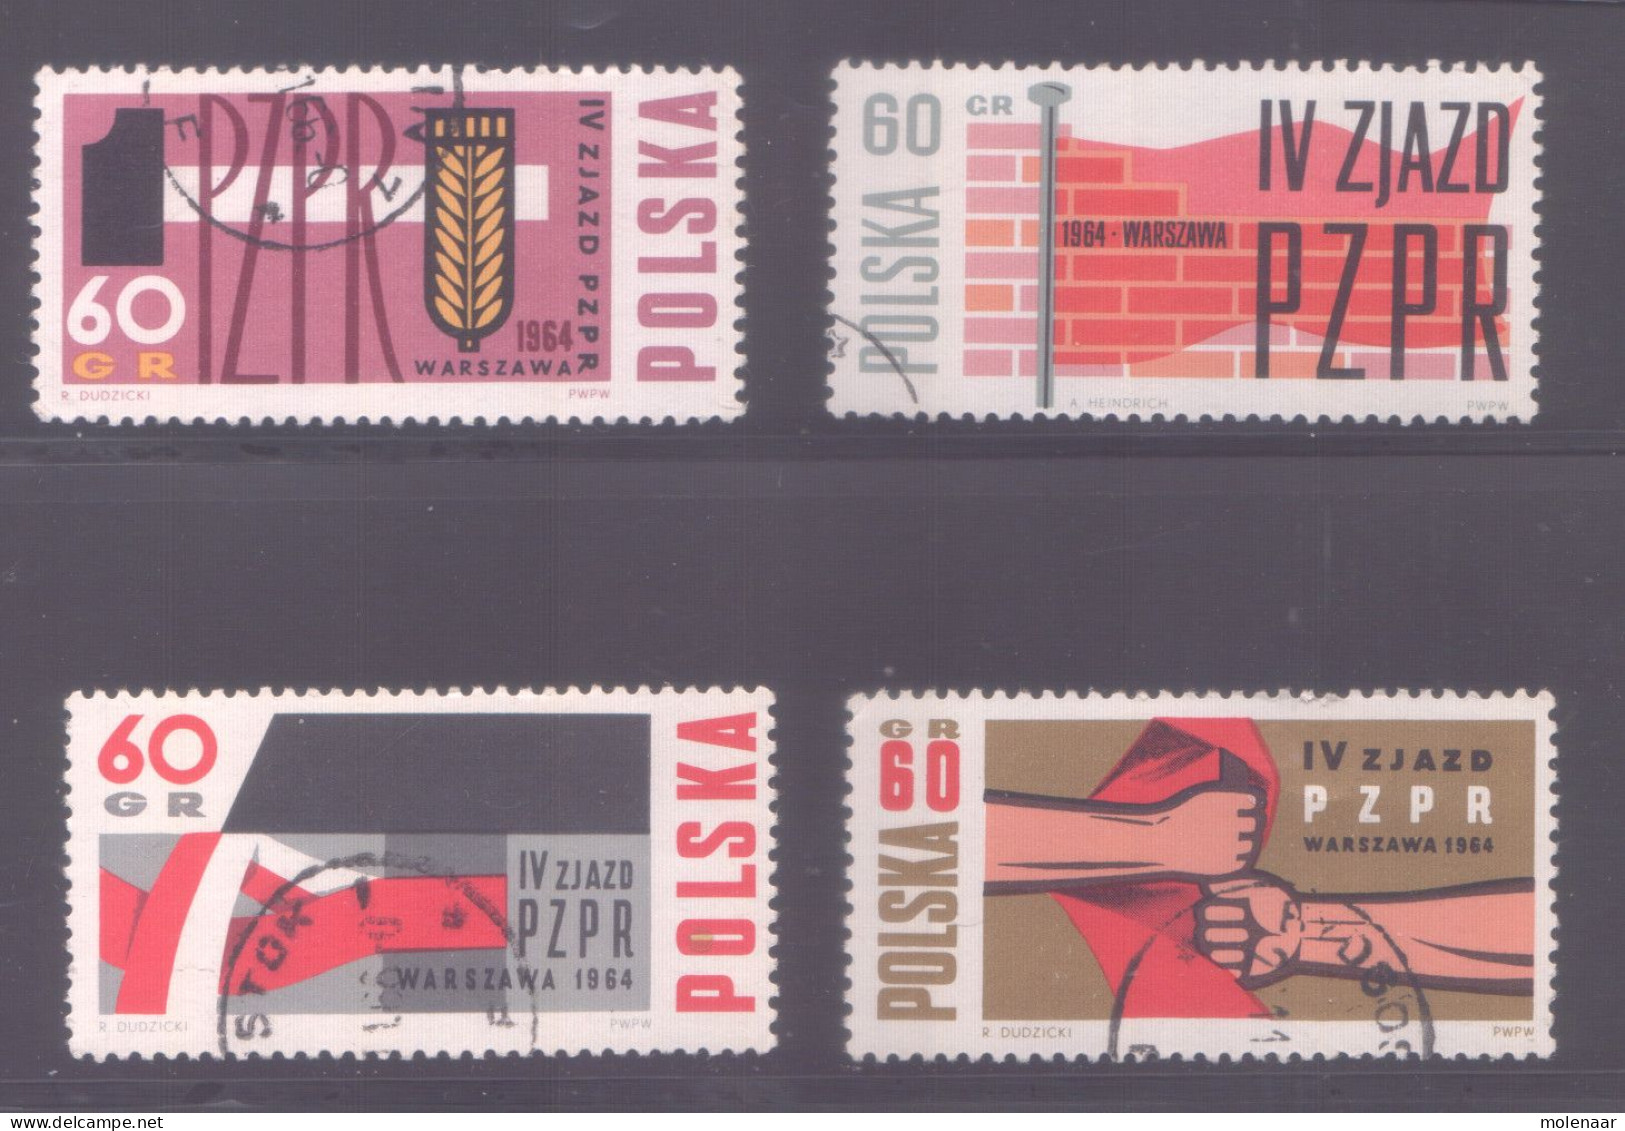 Postzegels > Europa > Polen > 1944-.... Republiek > 1971-80 > Gebruikt No.  1492-1495 (11960) - Briefe U. Dokumente